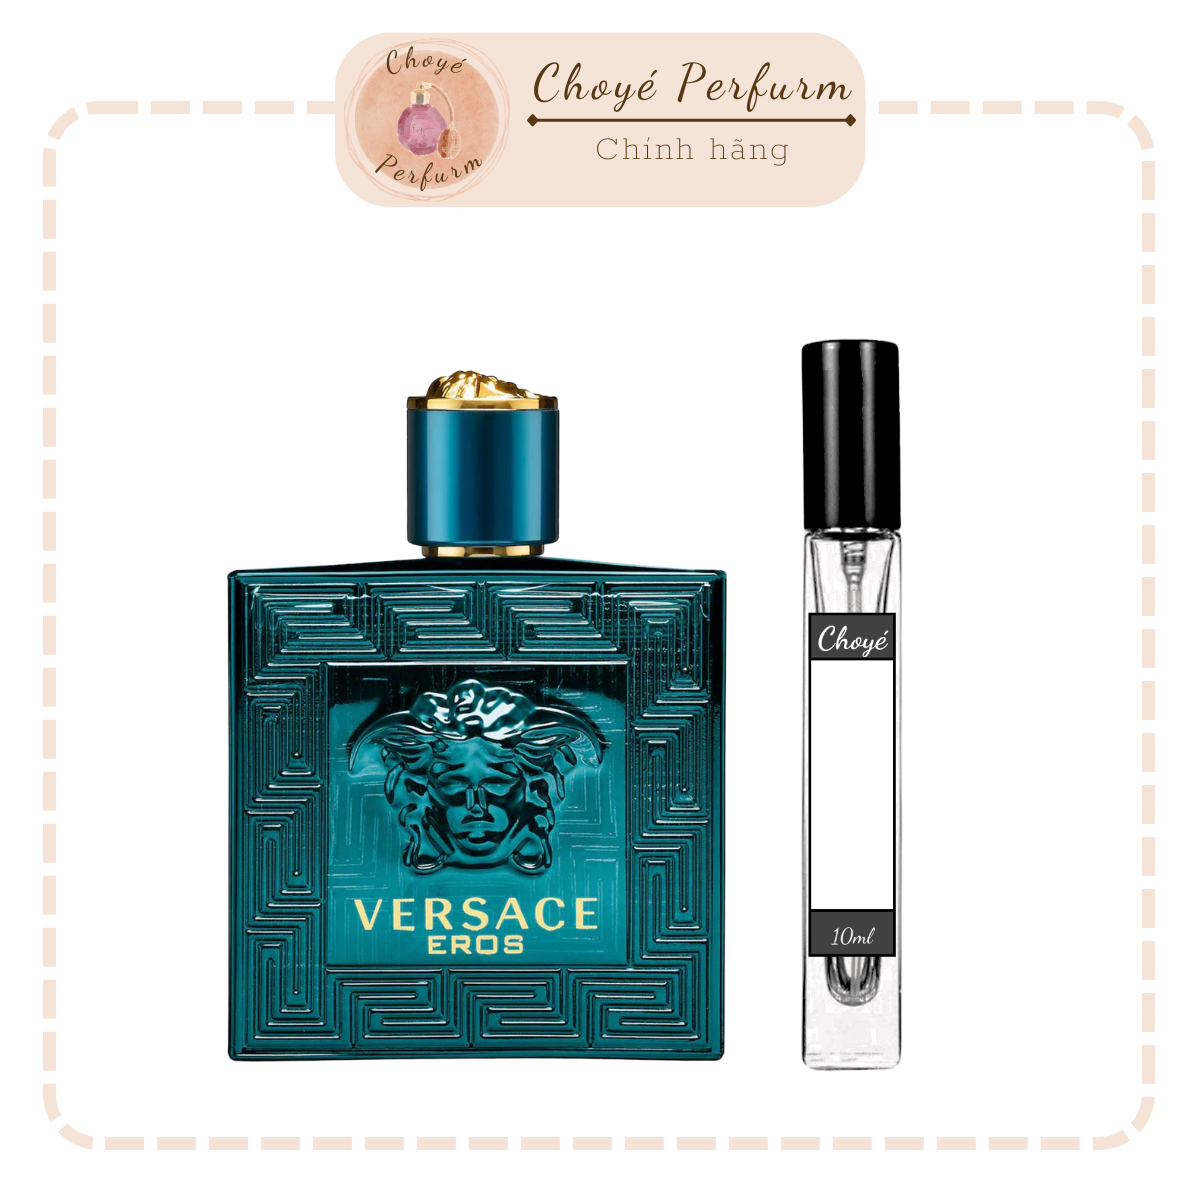 Nước hoa nam chính hãng Versace Eros 10ml. Mẫu nước hoa nam cao cấp.